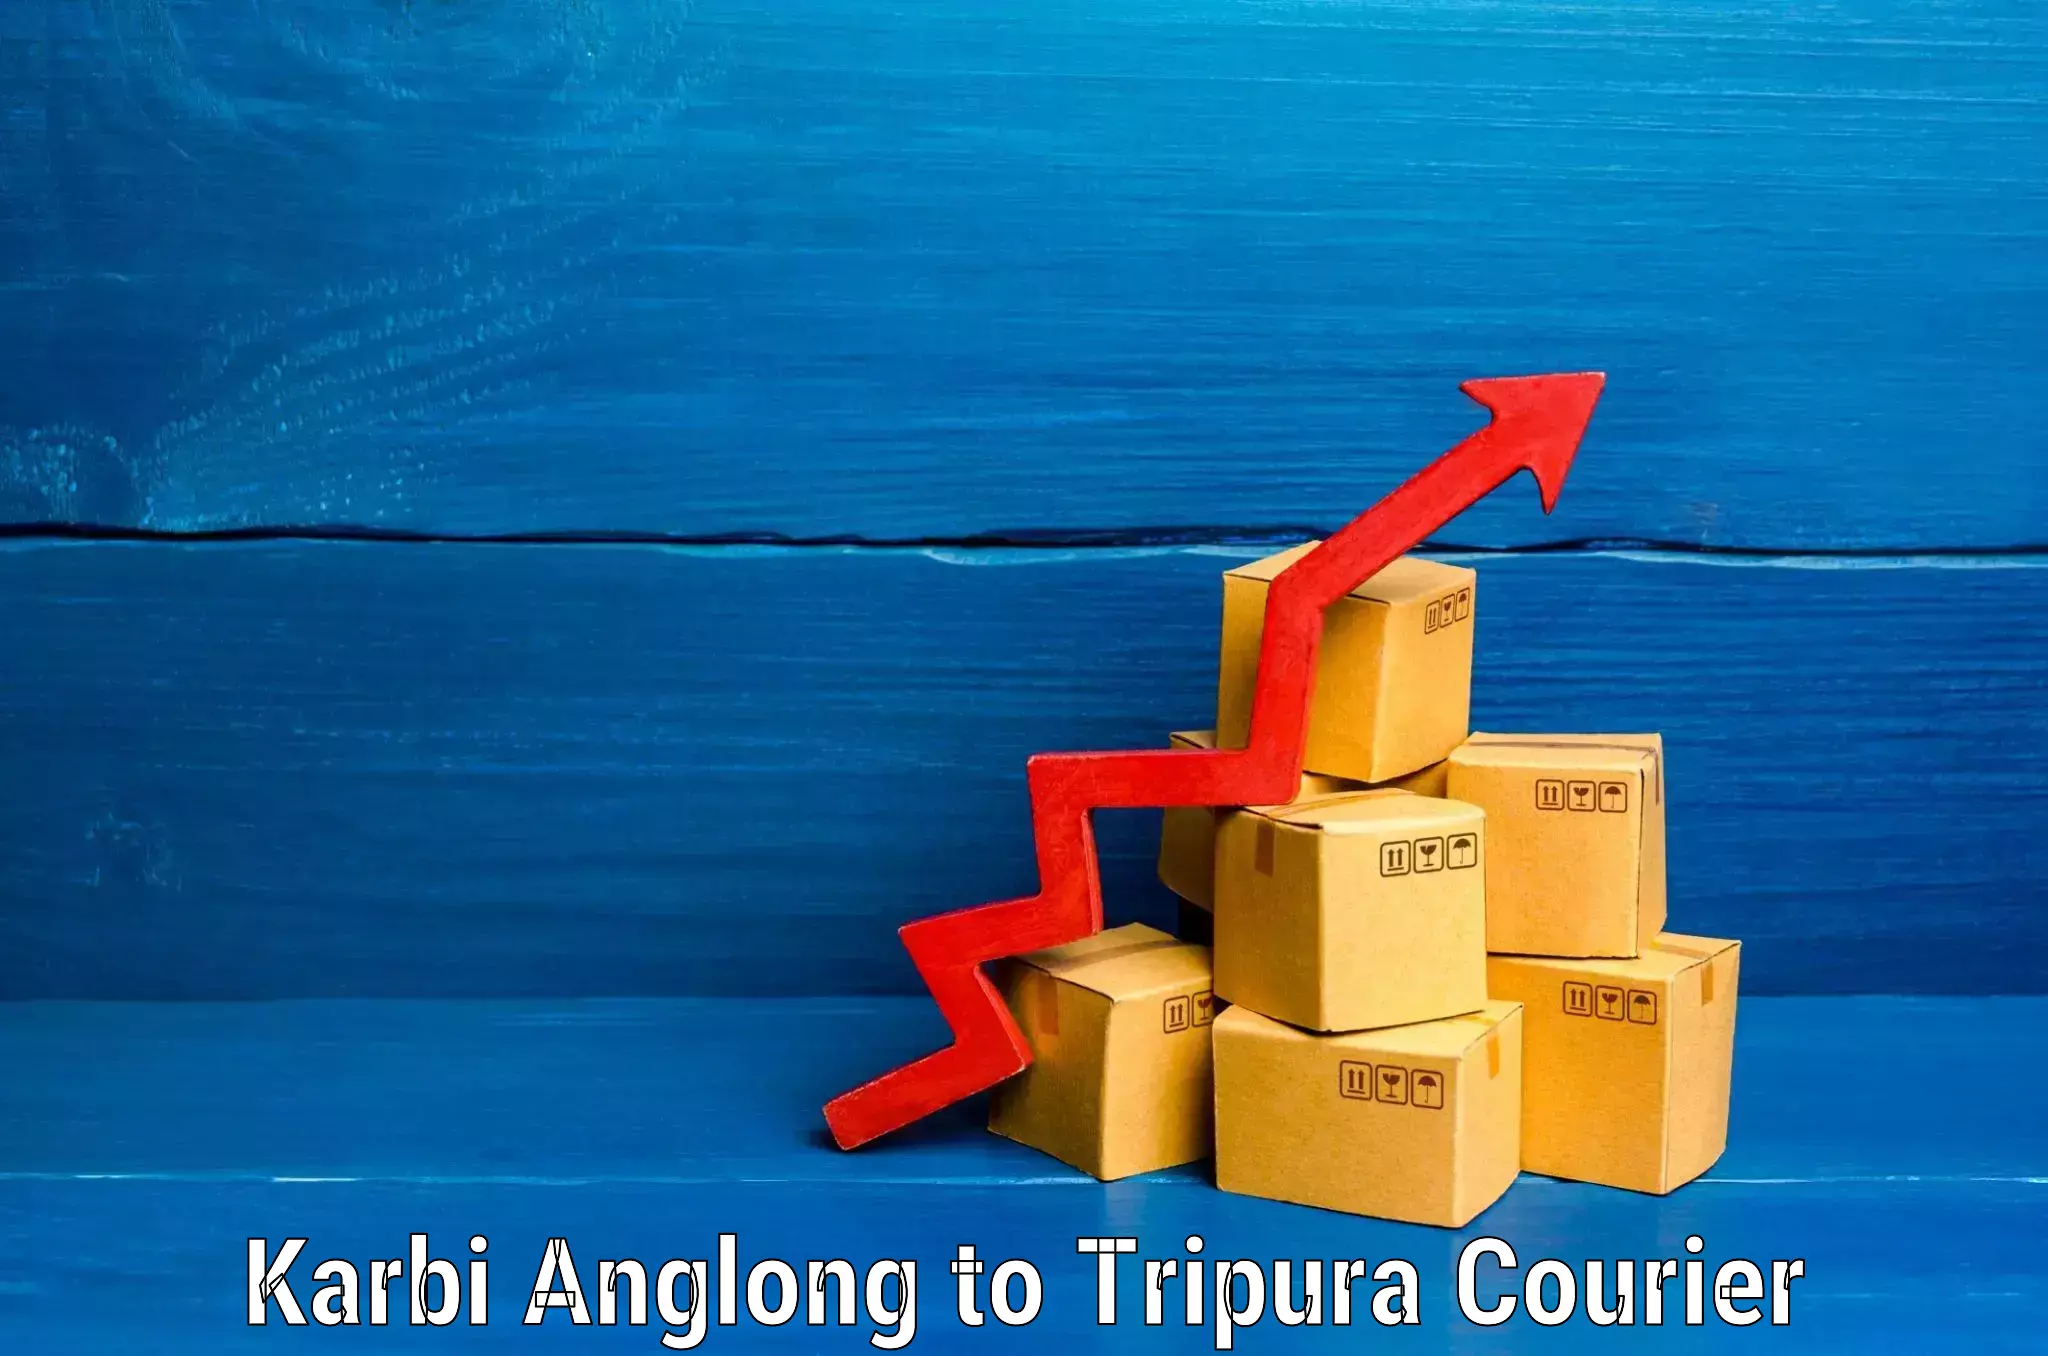 Baggage transport technology Karbi Anglong to Agartala